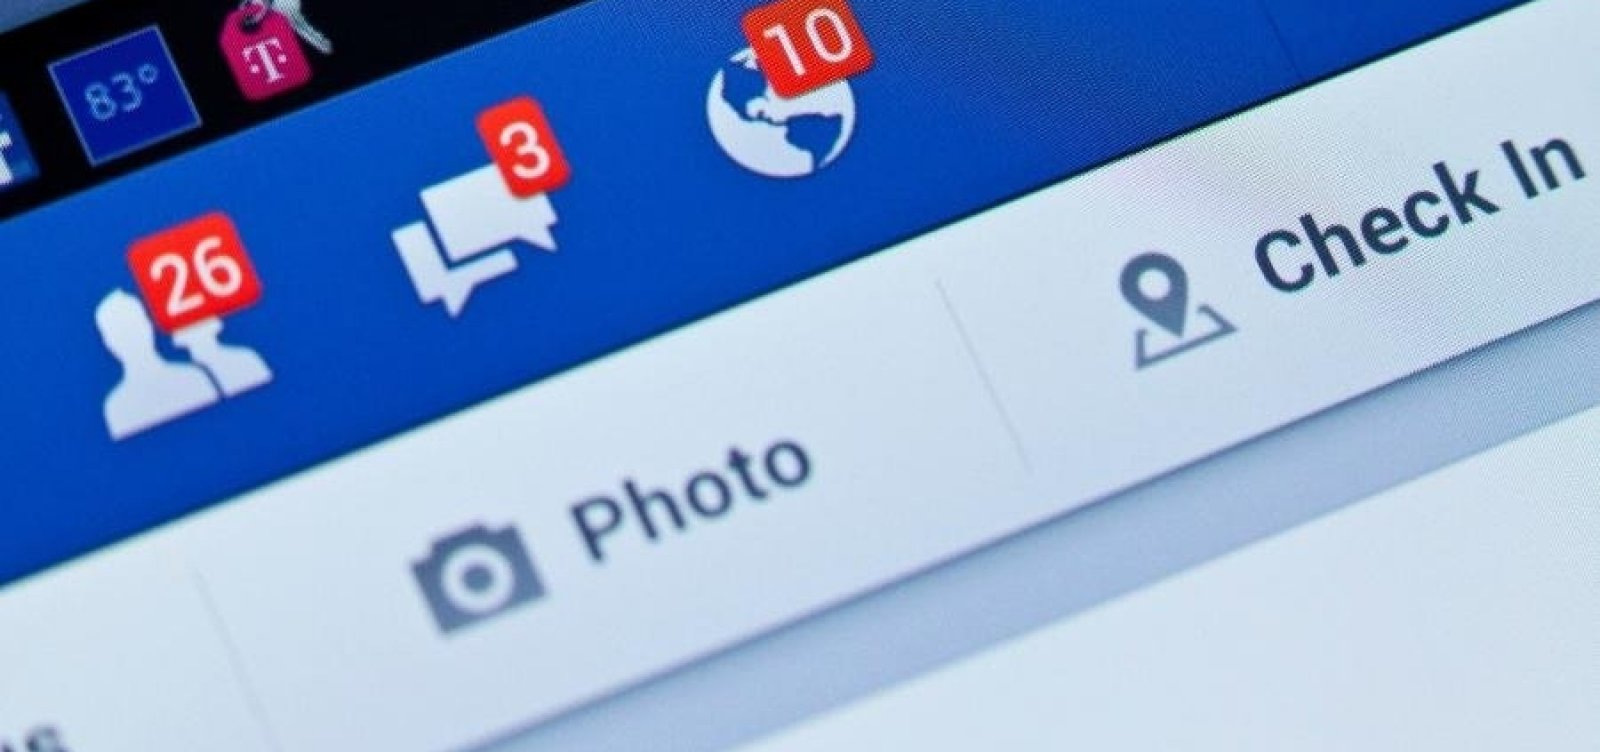 Facebook é investigado por enviar dado falso a investigação de tráfico